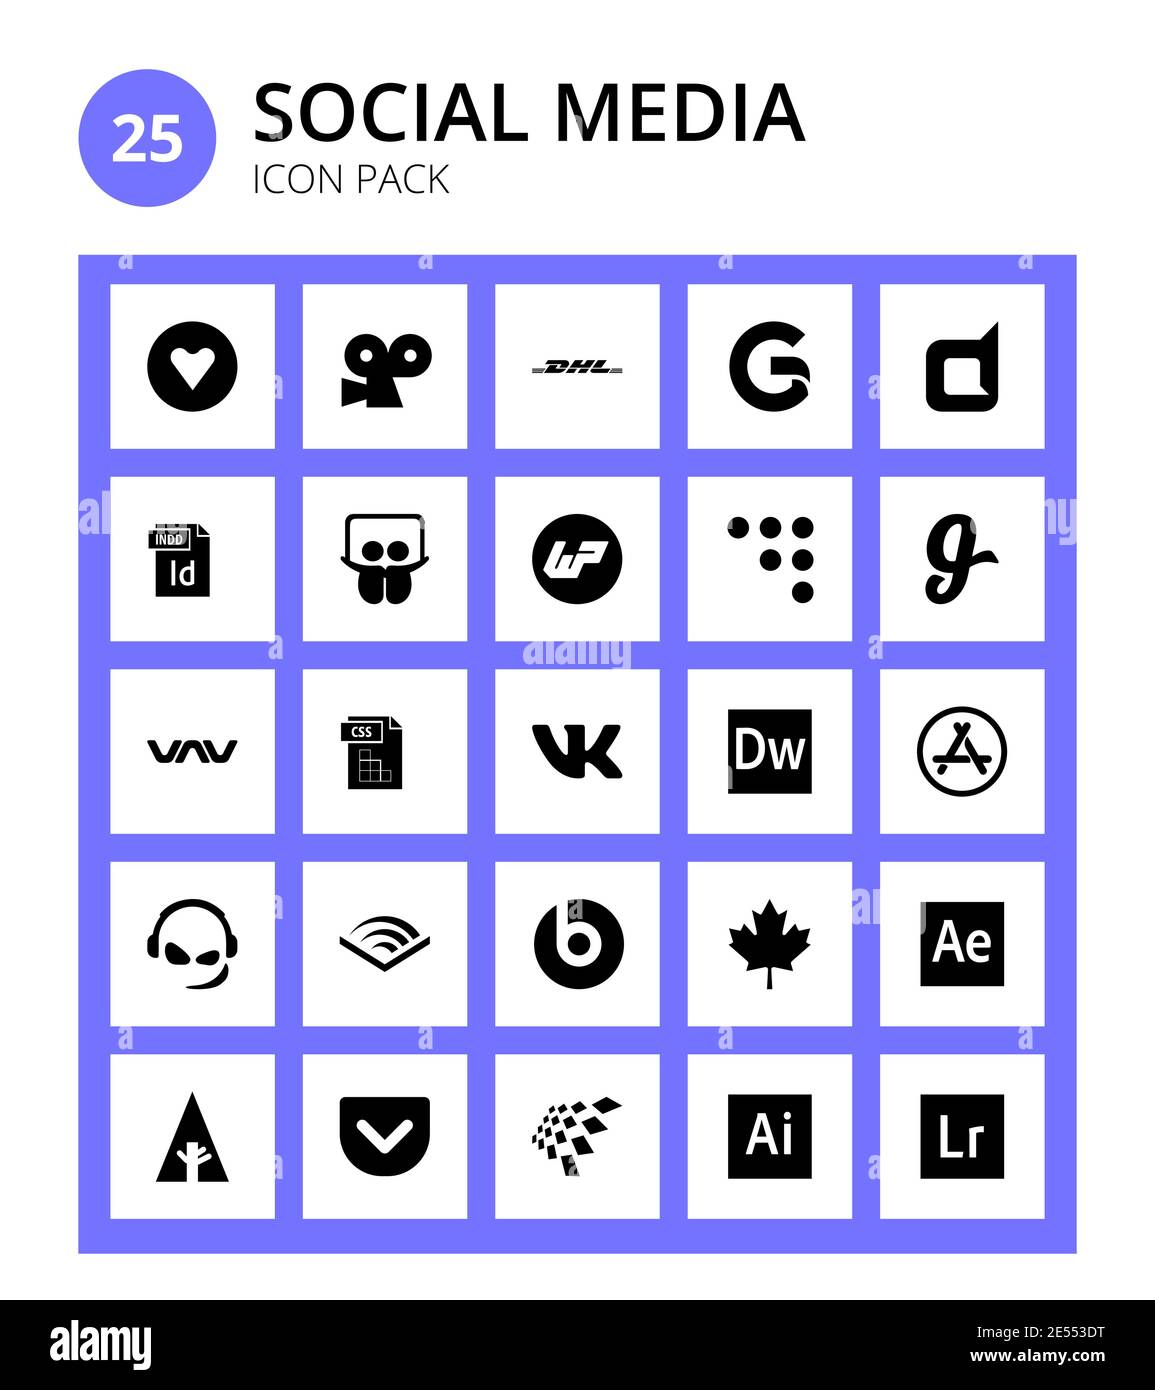 Social Media 25 icons vk, style, slideshare, file type, vnv Editable Vector Design Elements Stock Vector